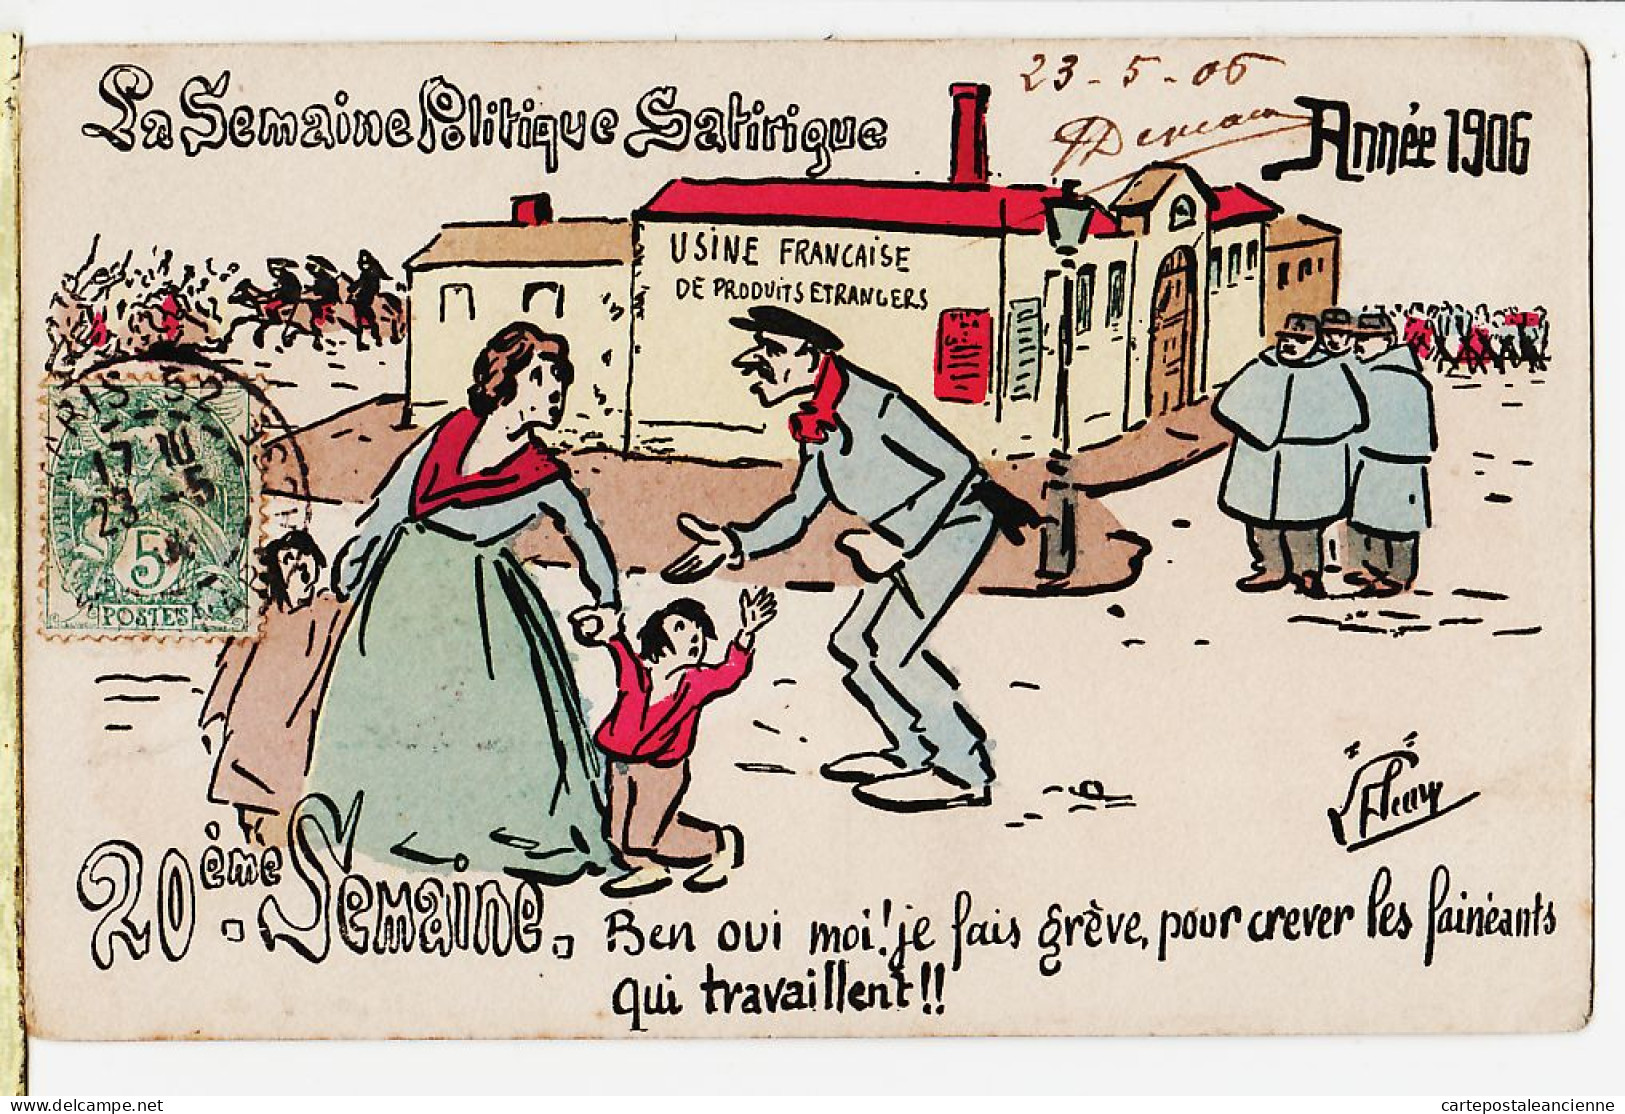 30914 / FLEURY 20e Semaine Politique Satirique Année 1906 Usine Française Produits Etrangers à ROCHE Galerie St Mars - Satirical